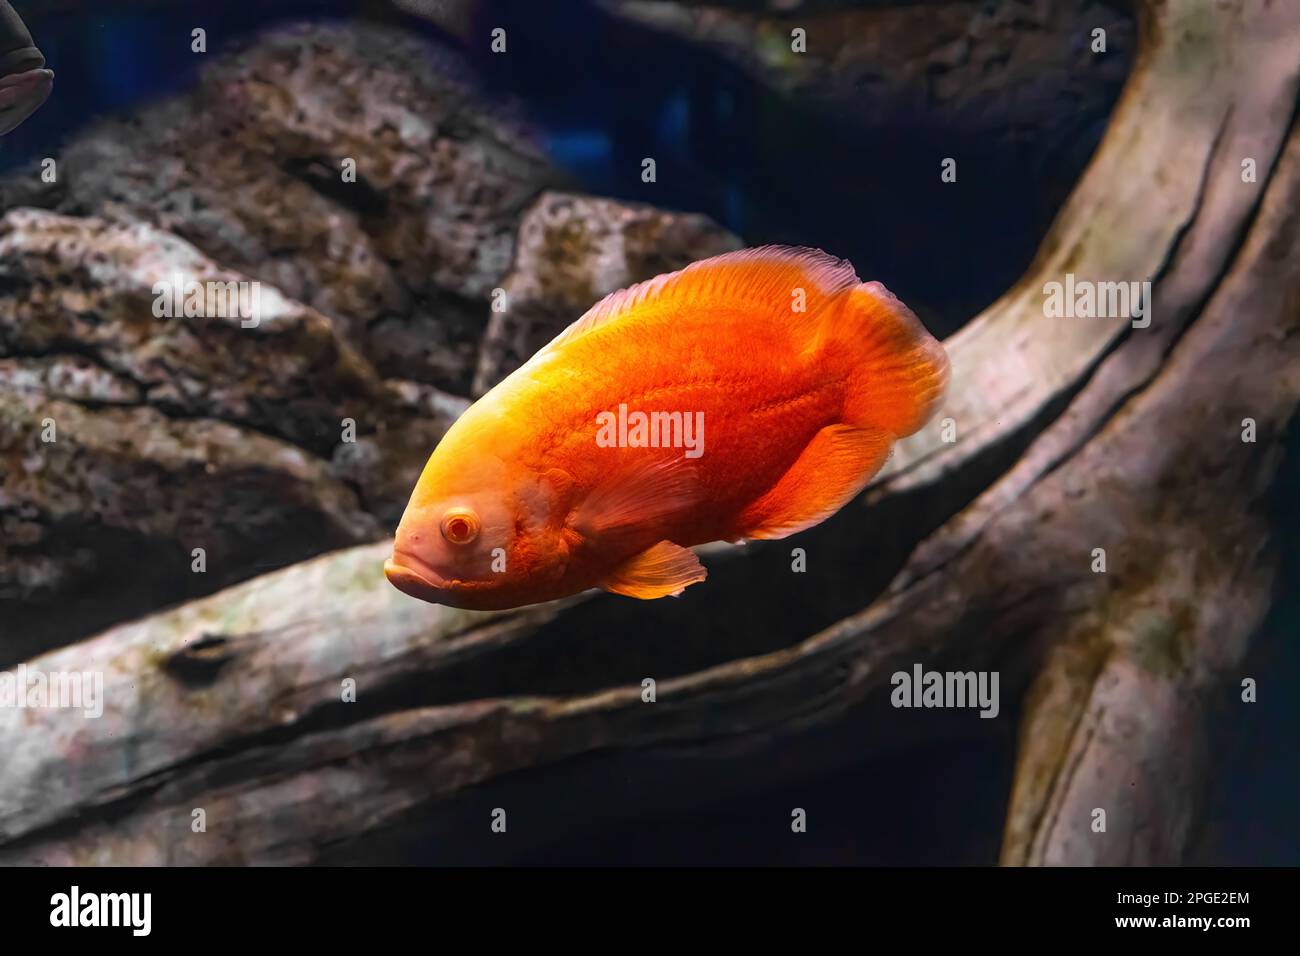 Oscar fish, Astronotus ocellatus, huge cichlid. Bright orange freshwater fish swimming in the aquarium, ocanarium. Aquarium pet, ichthyology, underwat Stock Photo